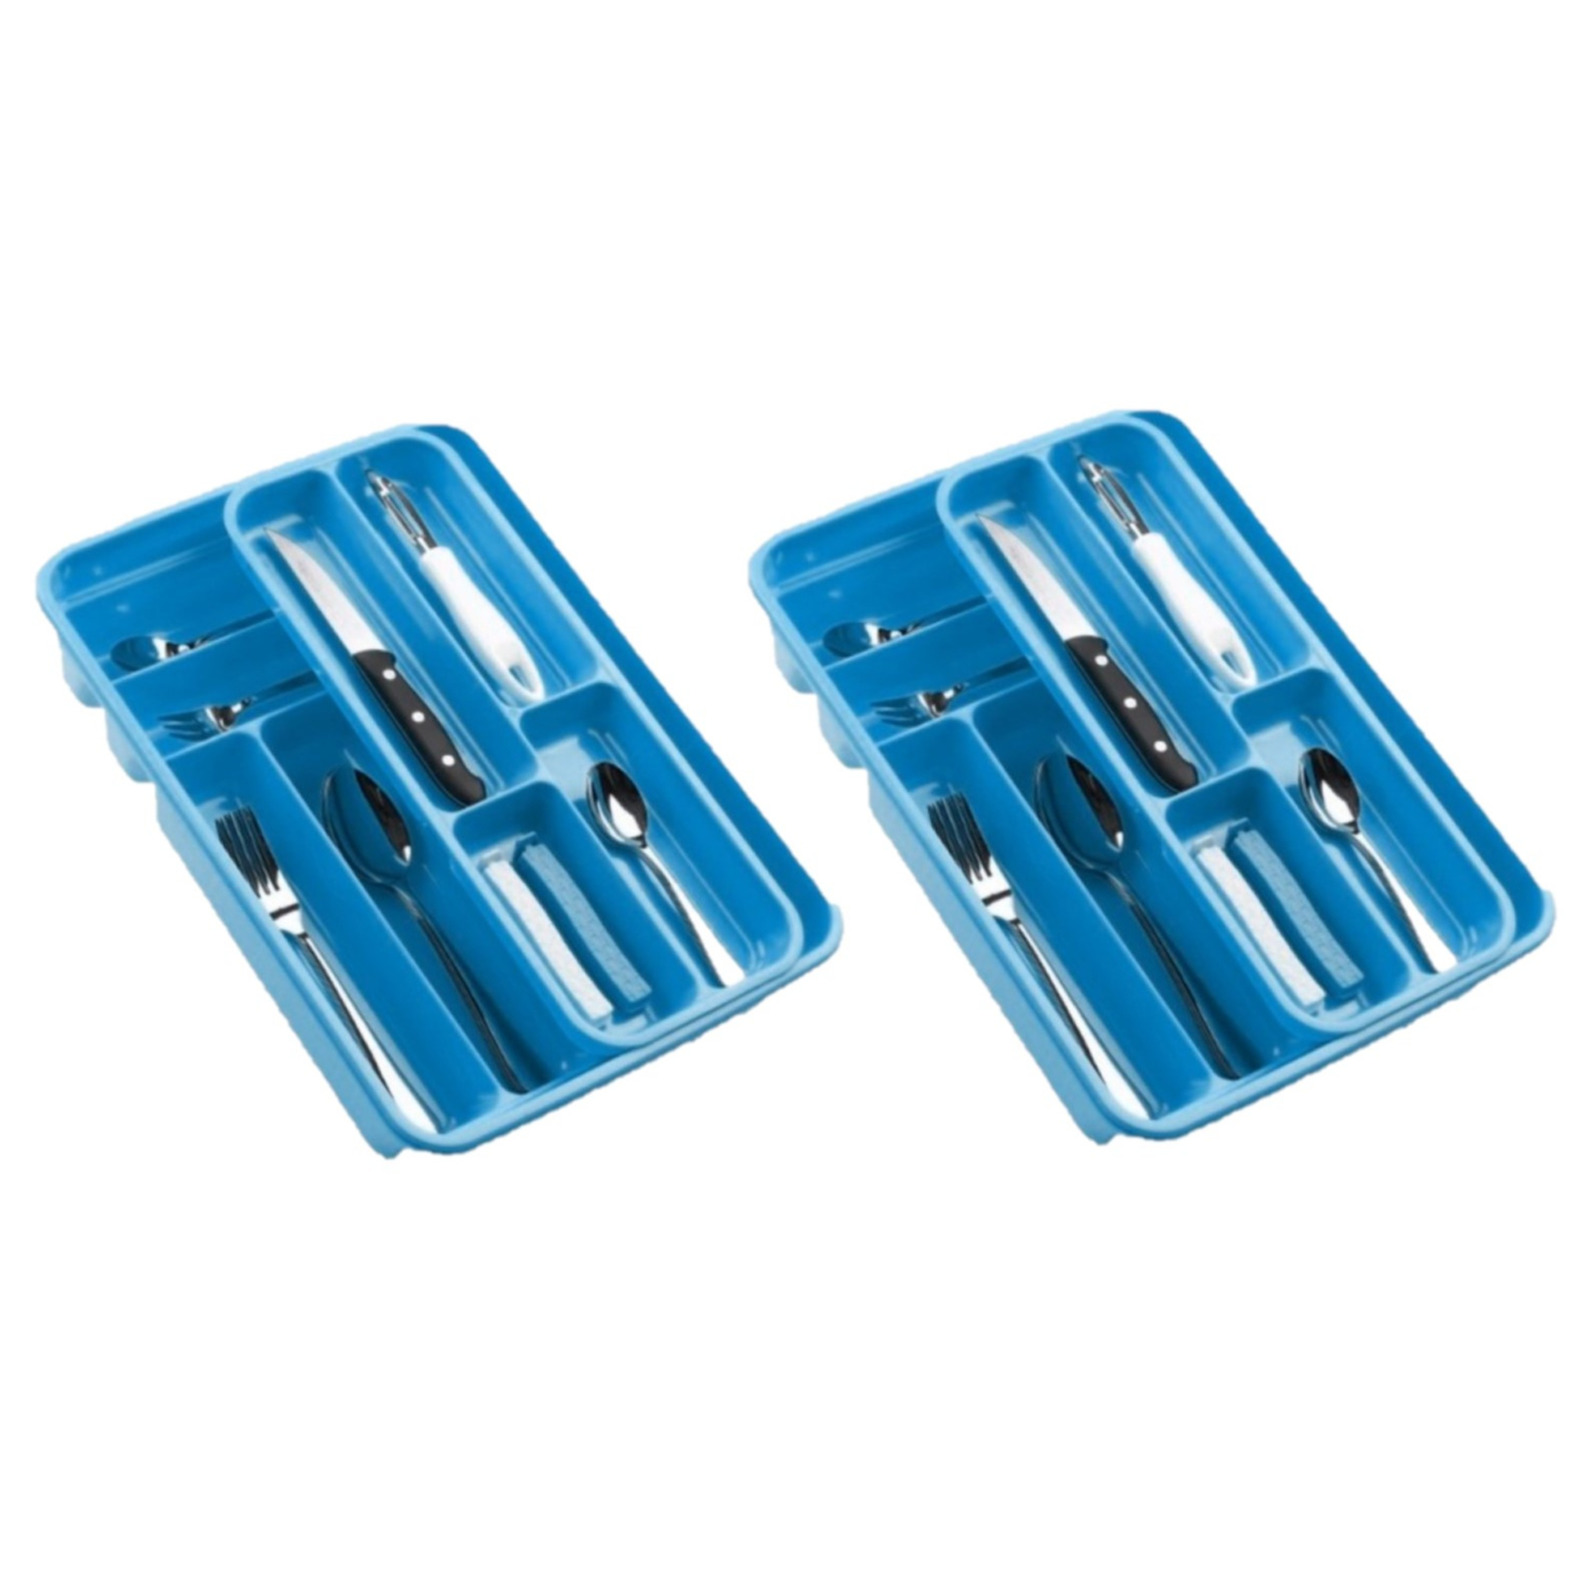 2x stuks bestekbakken-bestekhouders 2 lagen blauw L40 x B30 x H7 cm